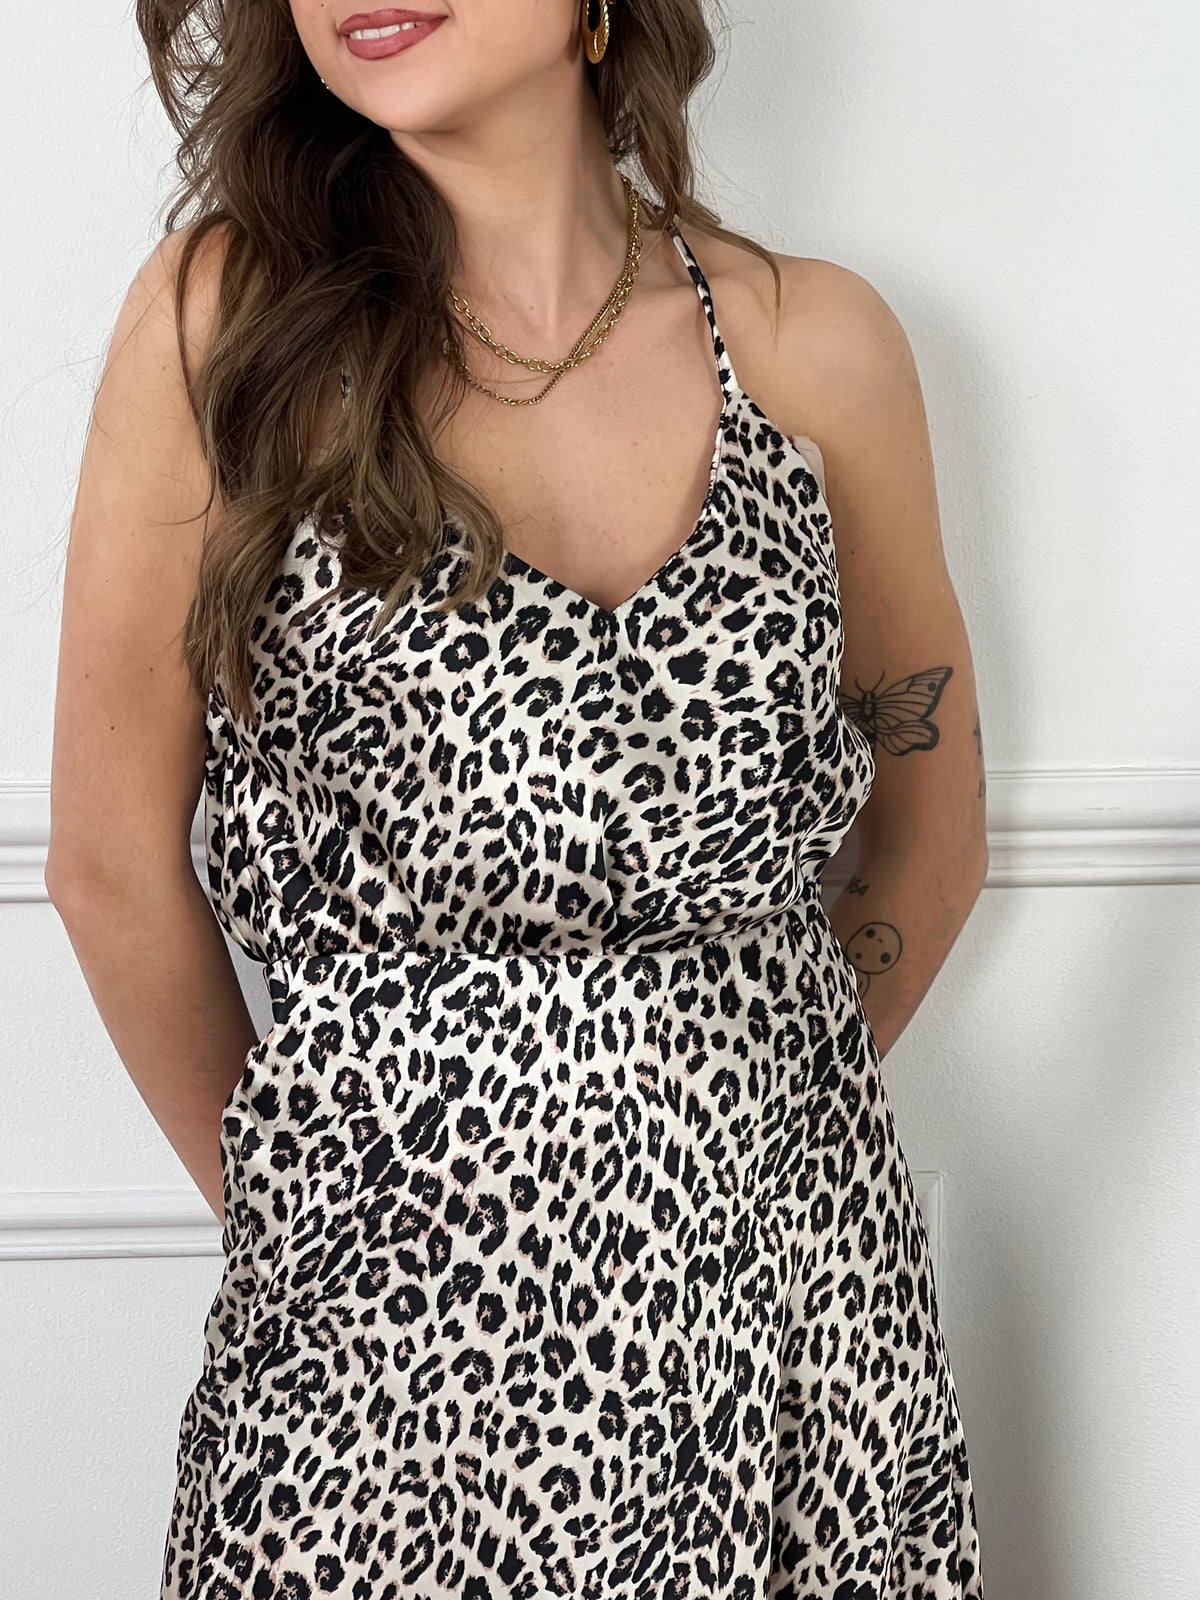 Découvrez notre top léopard Khloe ! Avec son col v et ses motifs léopard, il vous offrira un look branché et confortable. Ajoutez une touche de style à votre garde-robe avec ce top unique.